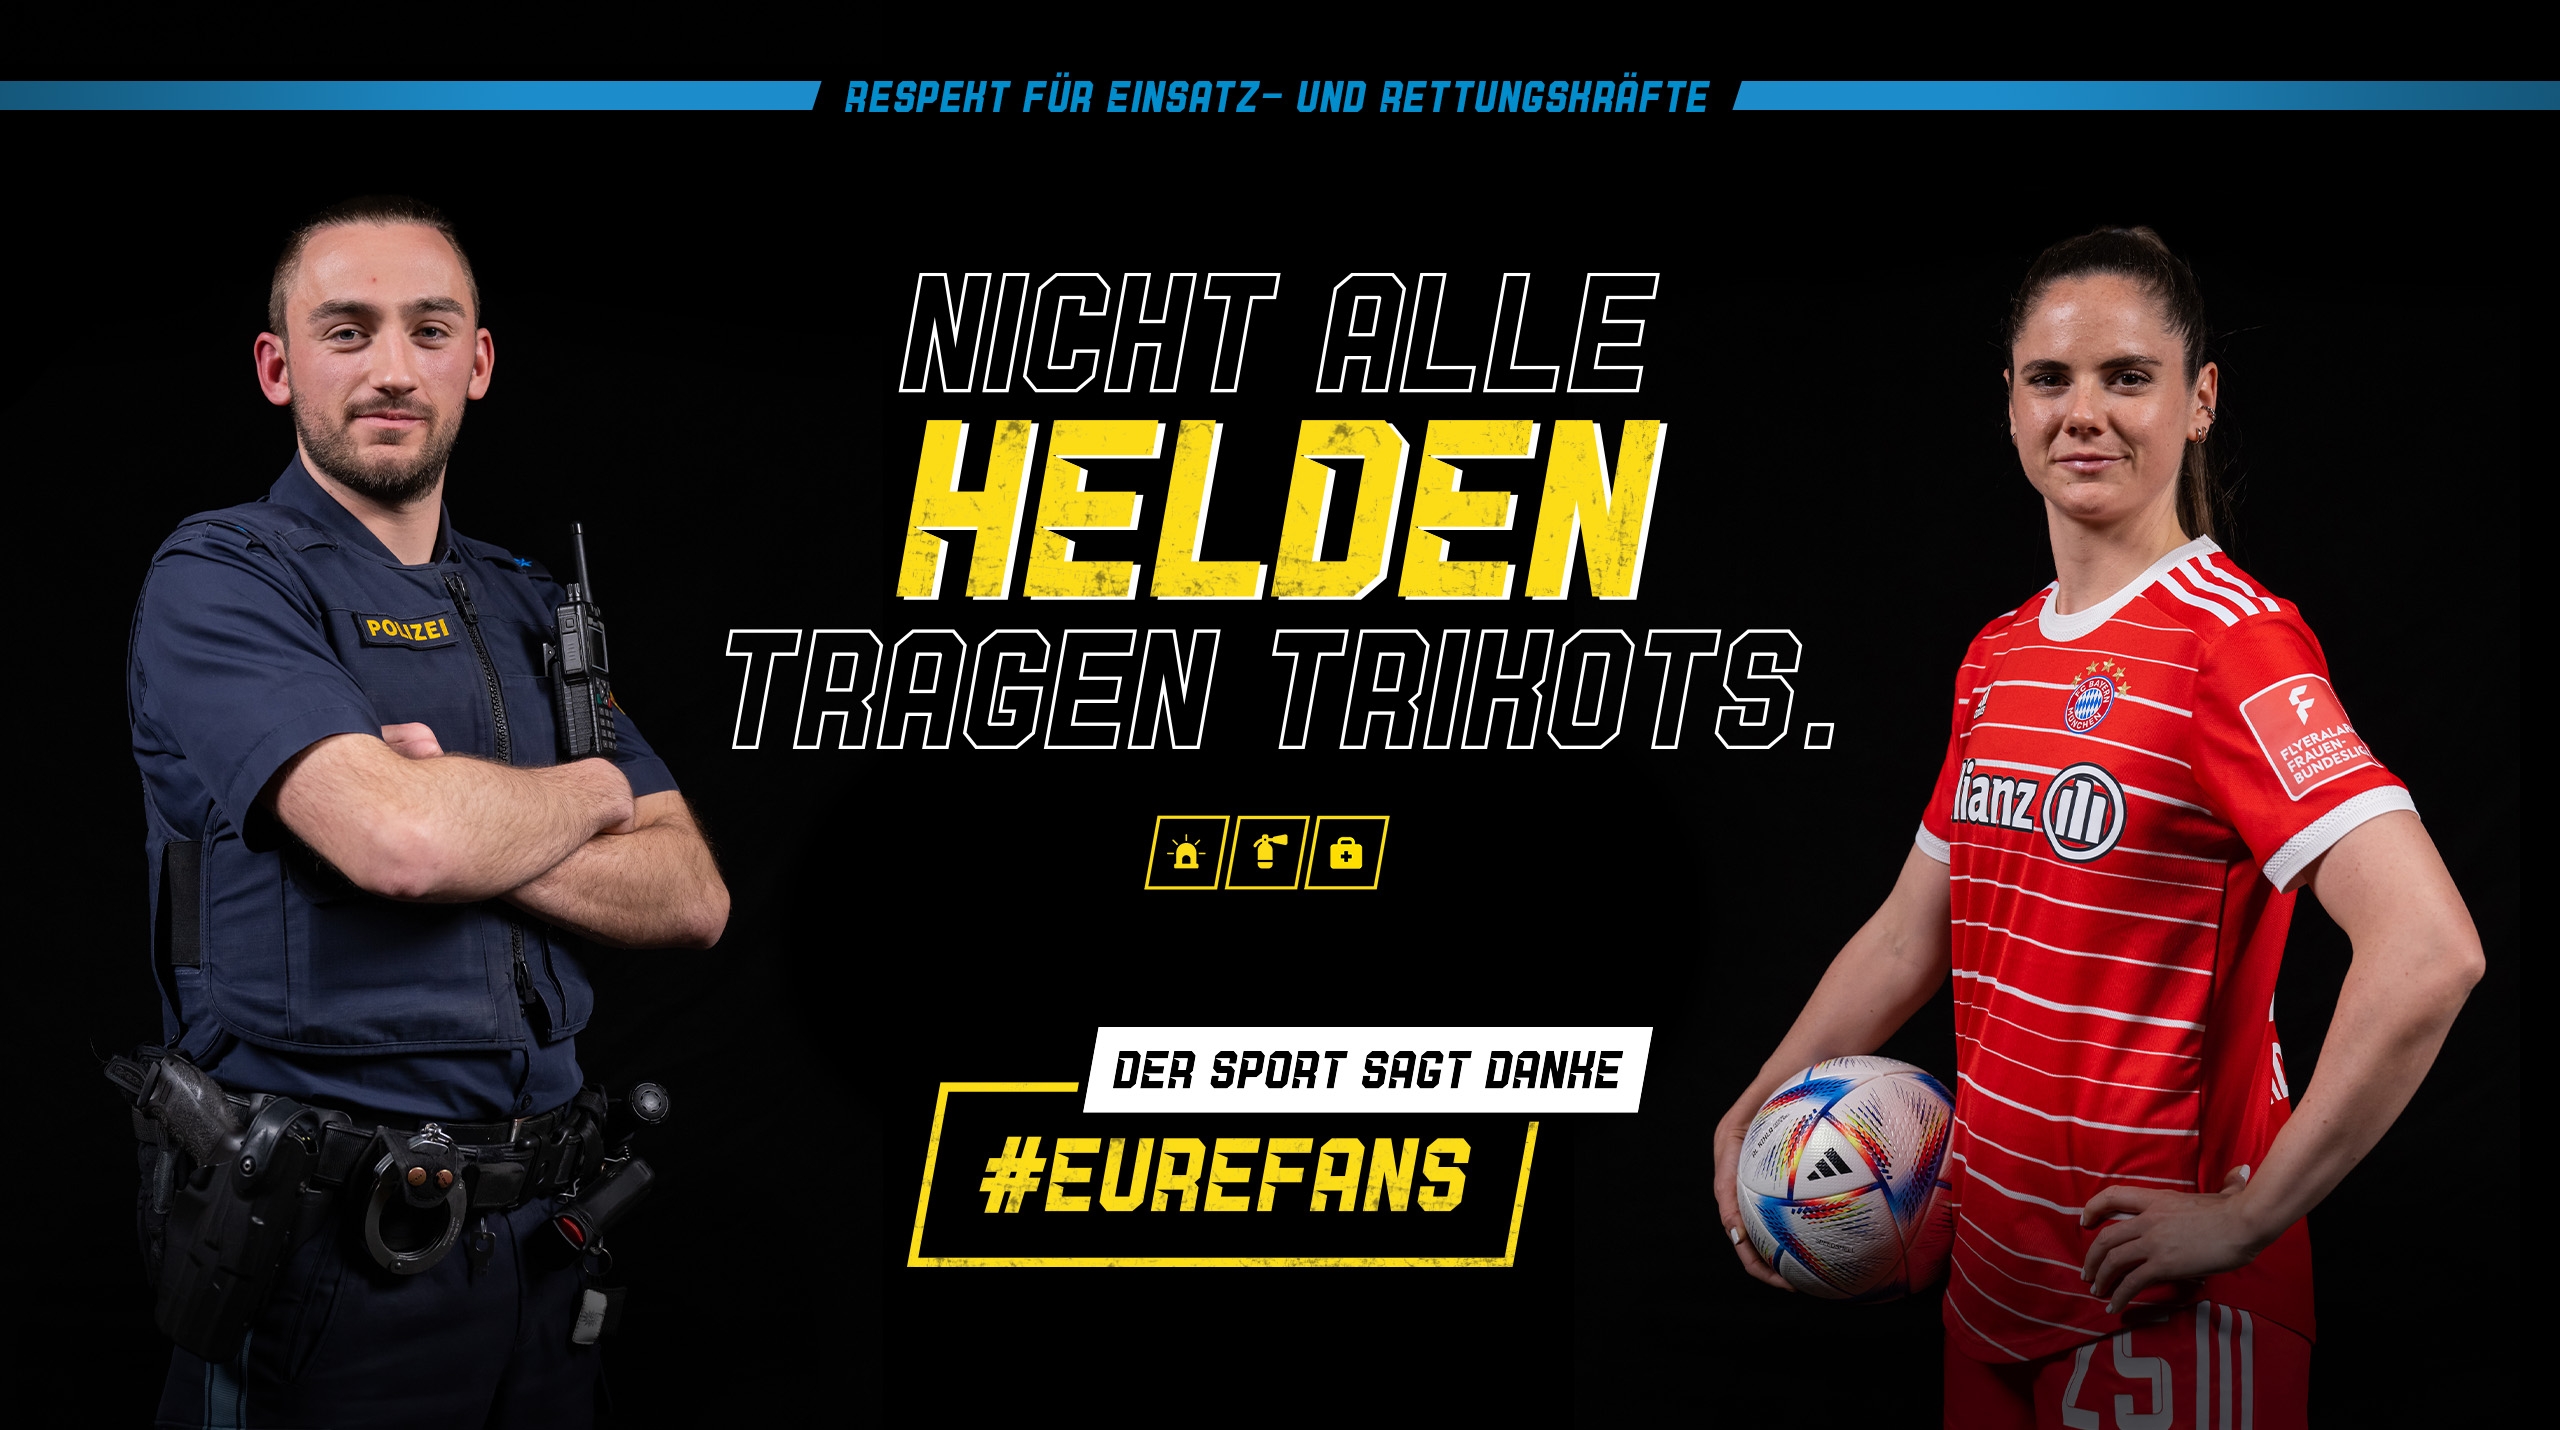 Grafik zur Kampagne mit Polizist und Fußballerin: Respekt für Einsatz- und Rettungskräfte: Nicht alle Helden tragen Trikots. #EureFans - Der Sport sagt Danke